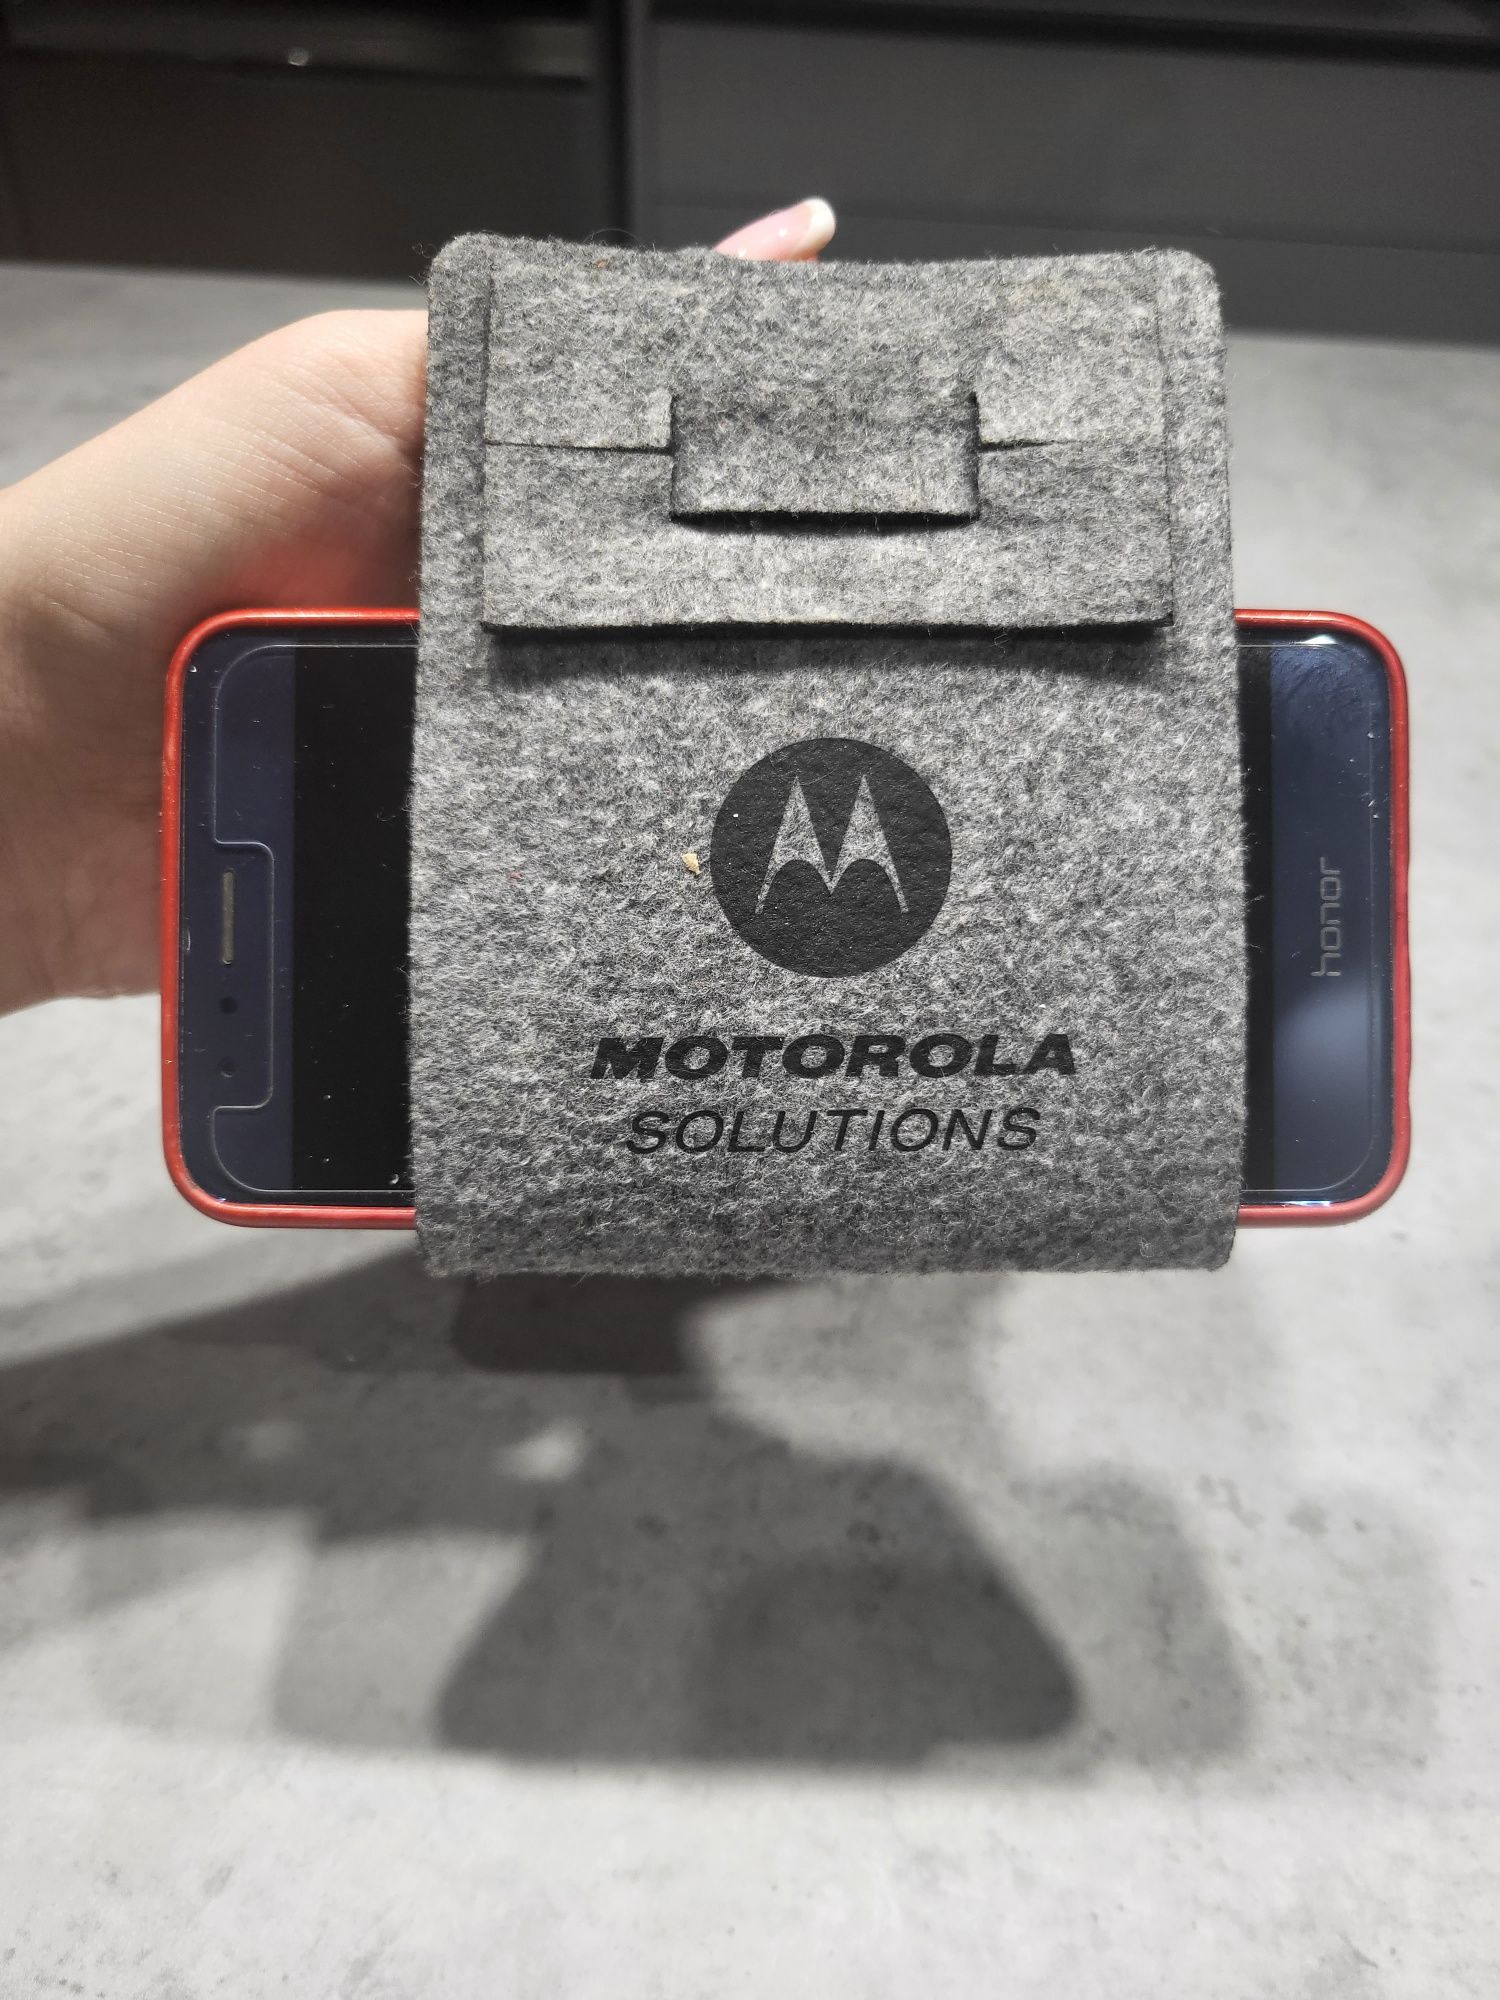 Uchwyt do ładowania  telefonu  nowy
Motorola 

Wymiary:19 x 9 x 0,5 cm